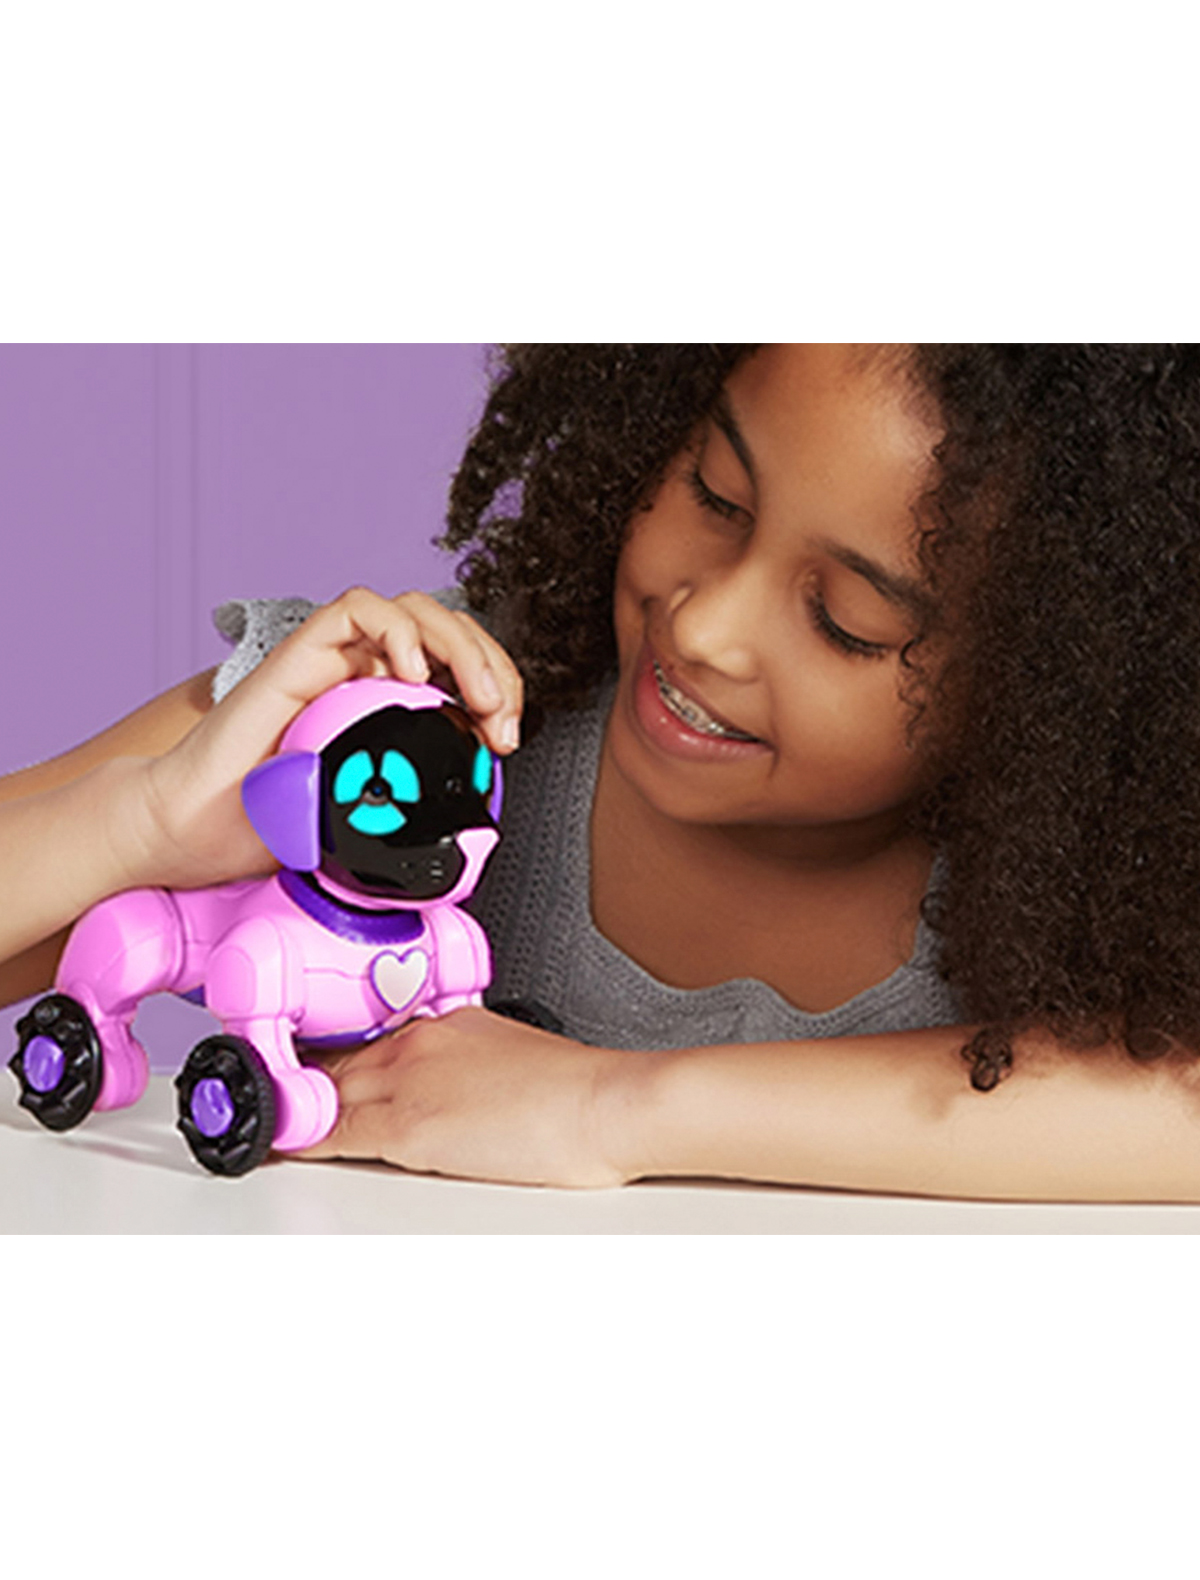 Какие самые популярные игрушки. Робот WOWWEE Chippies. Собака интерактивная WOWWEE. Интерактивная игрушка робот WOWWEE Chip. Популярные игрушки для девочек.